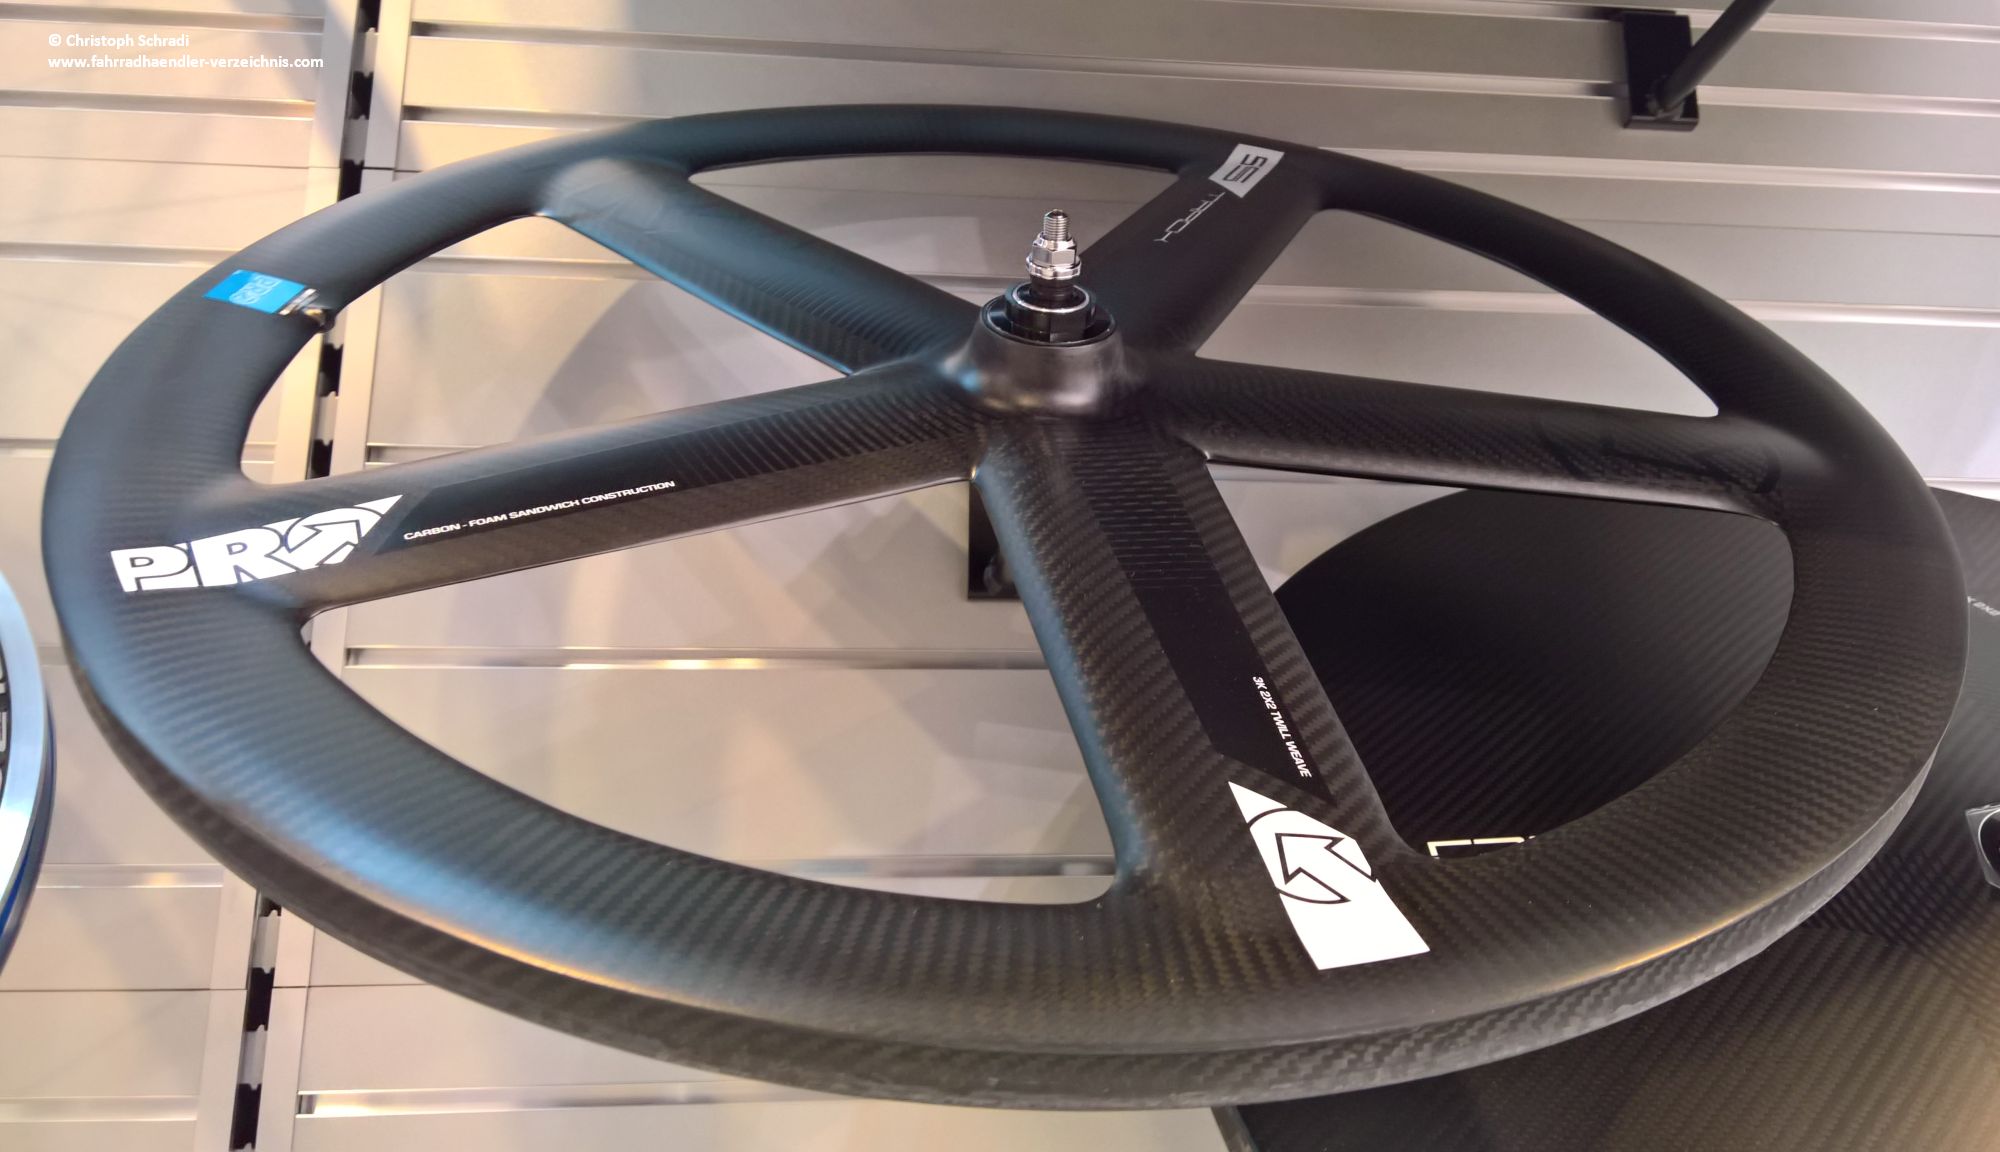 Ein Druckspeichenlaufrad aus Carbon von der Marke Pro für den Einsatz am Rennrad